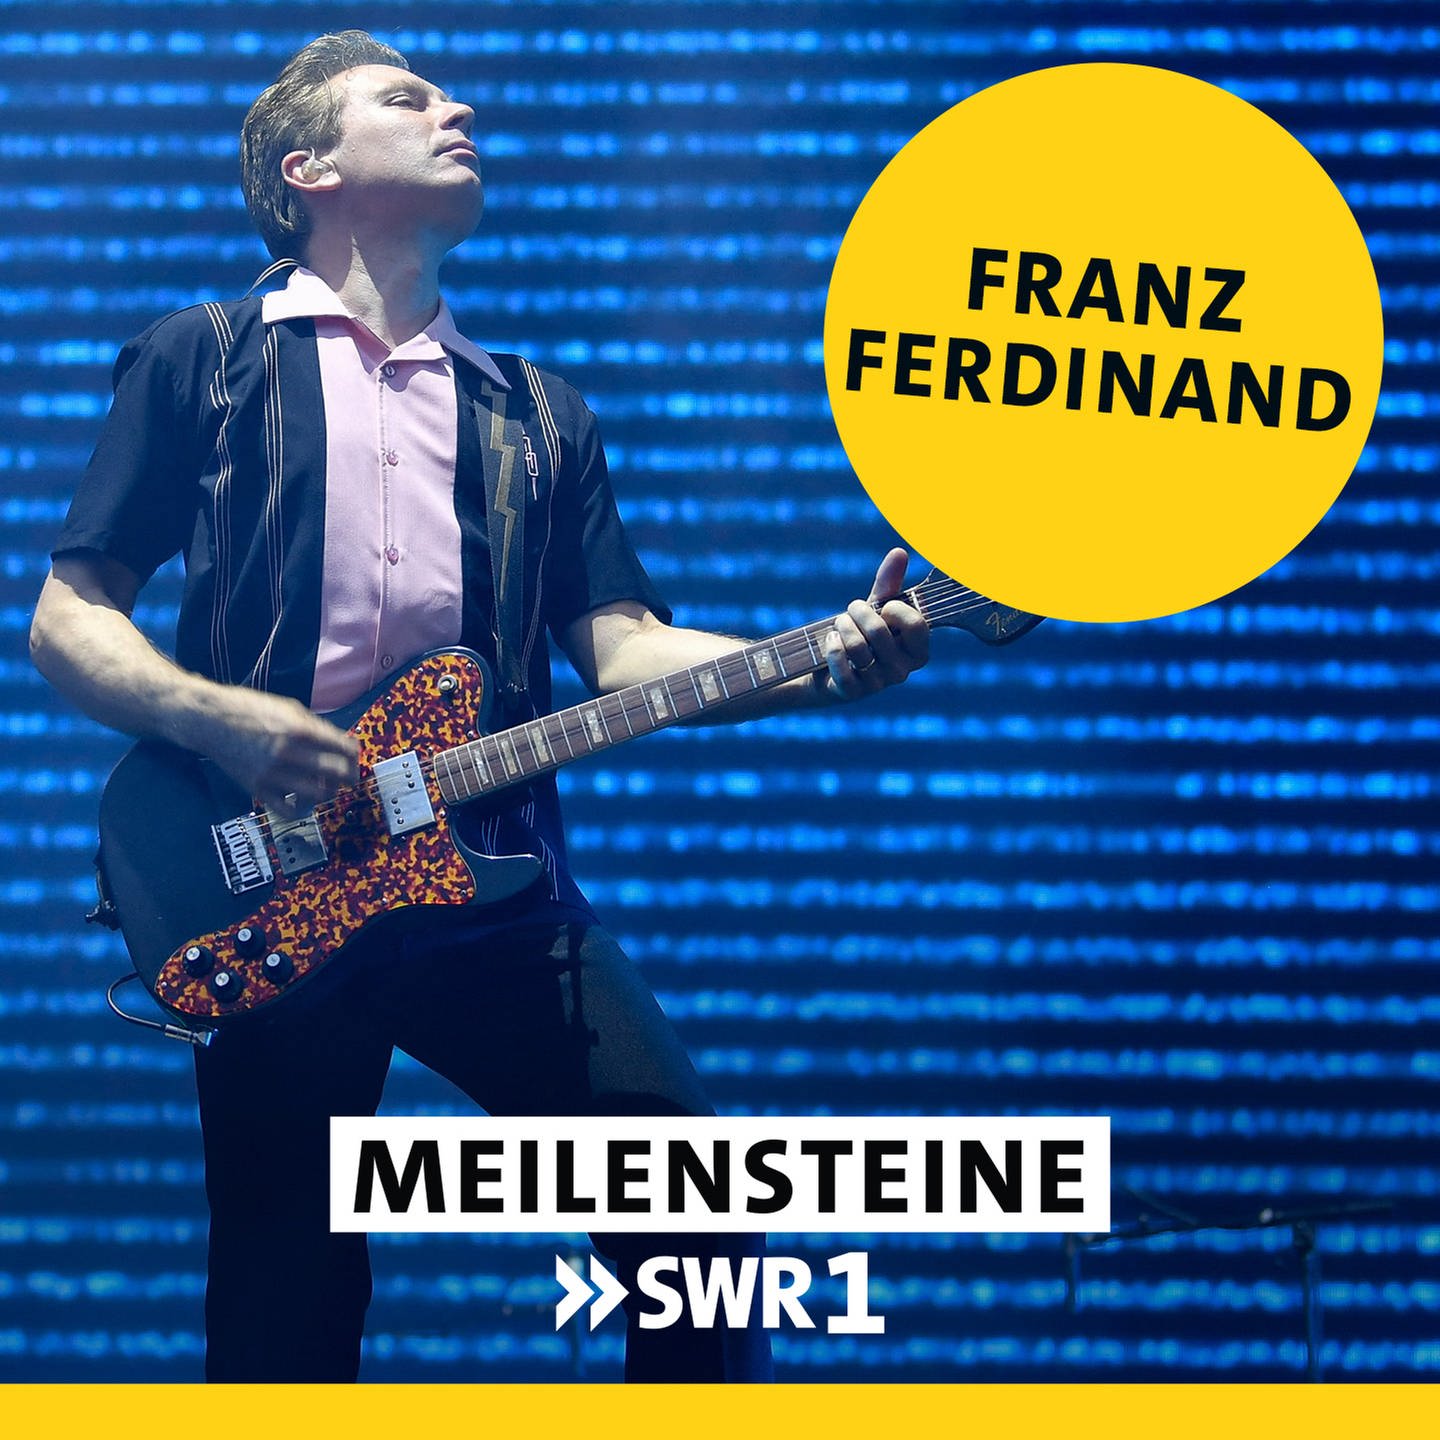 Franz Ferdinand – "Franz Ferdinand"